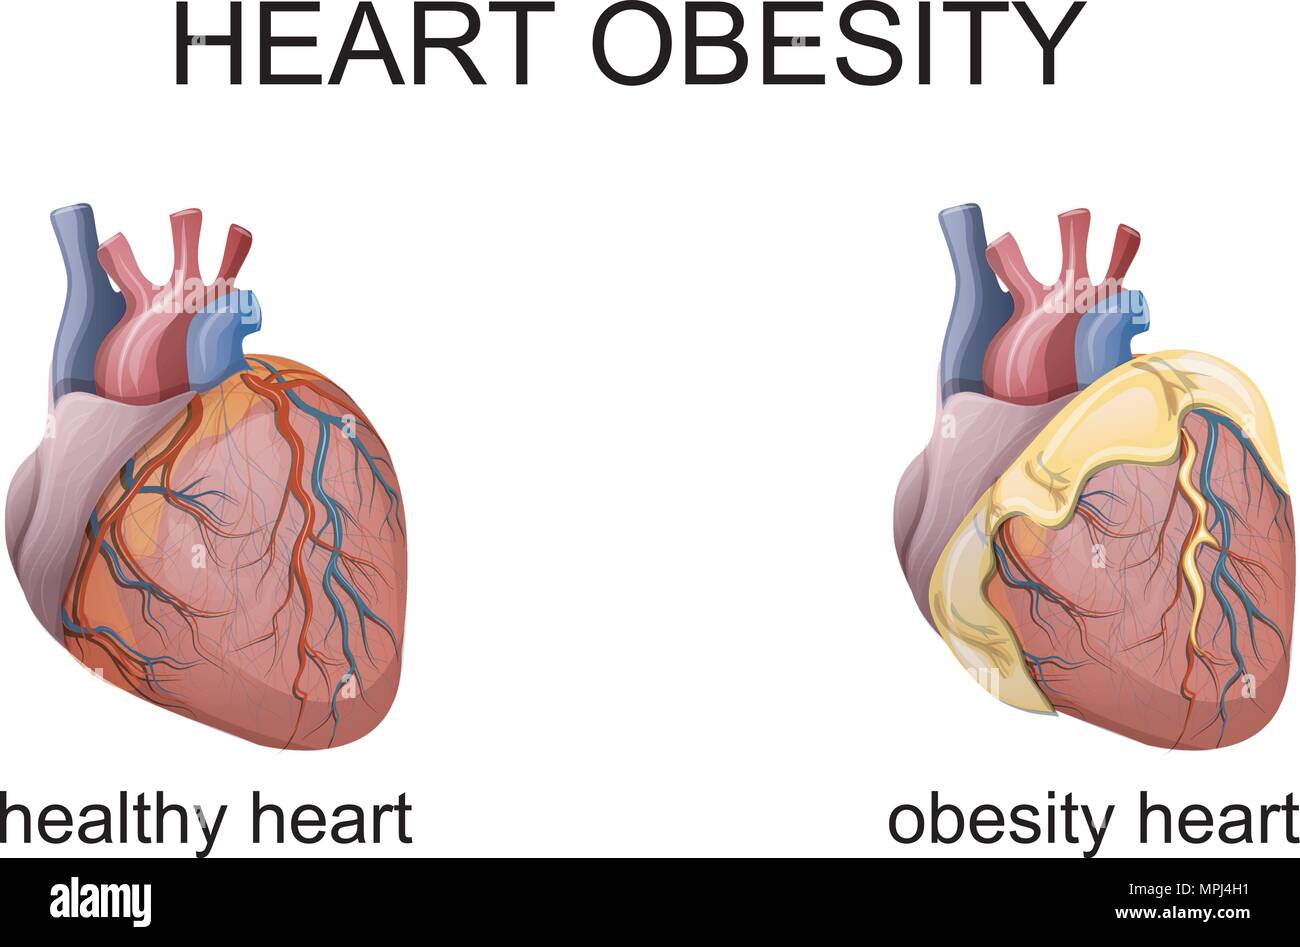 Ожирение и сердечно сосудистые заболевания. Здоровое и больное сердце. Сердце здорового человека и с ожирением.